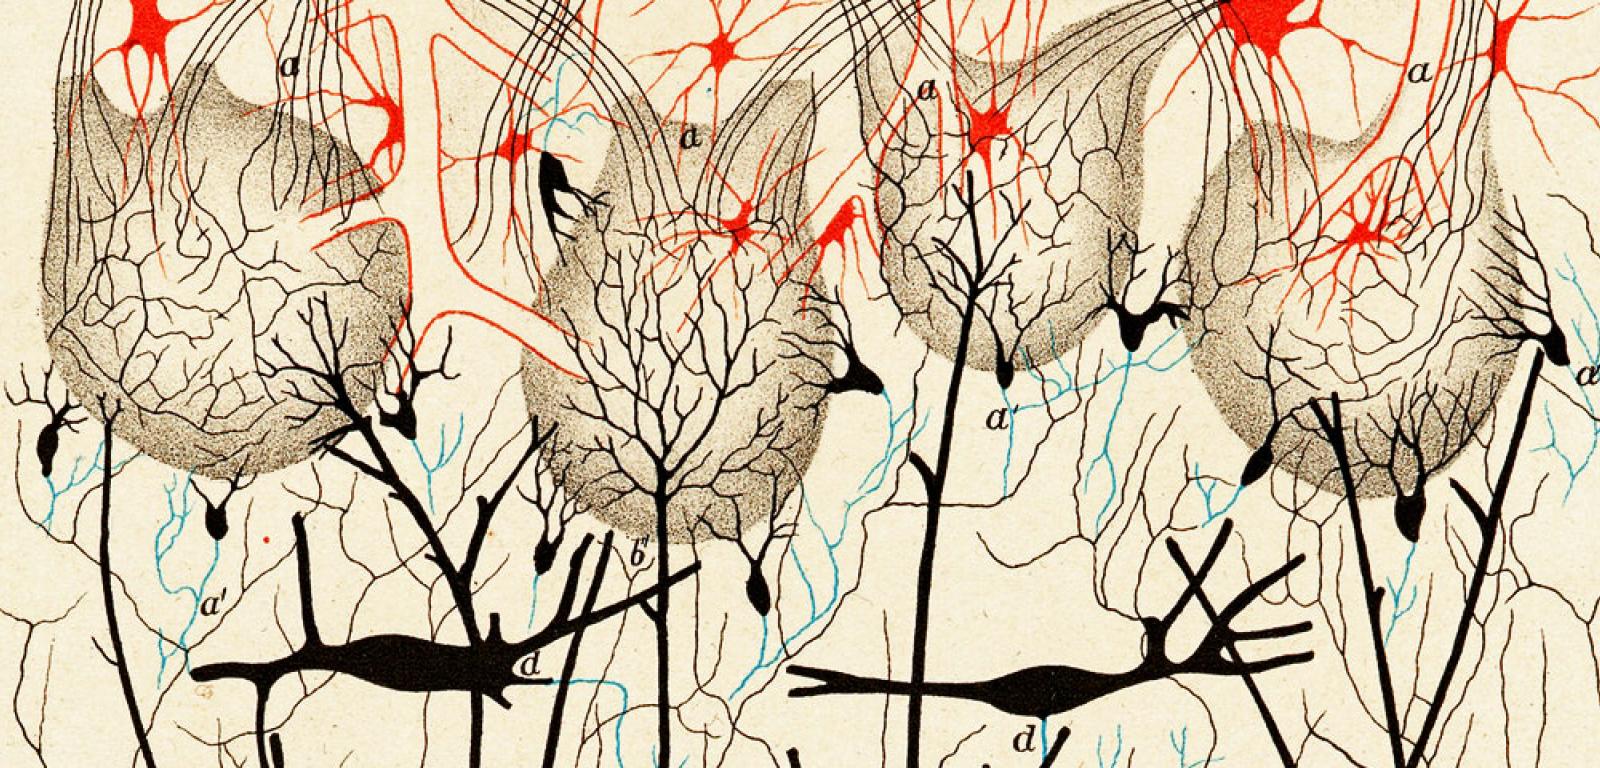 Komórki nerwowe w cebulce węchowej psa. Ilustracja z książki „Sulla fina anatomia degli organi centrali del sistema nervoso” Camillo Golgiego z 1885 r.